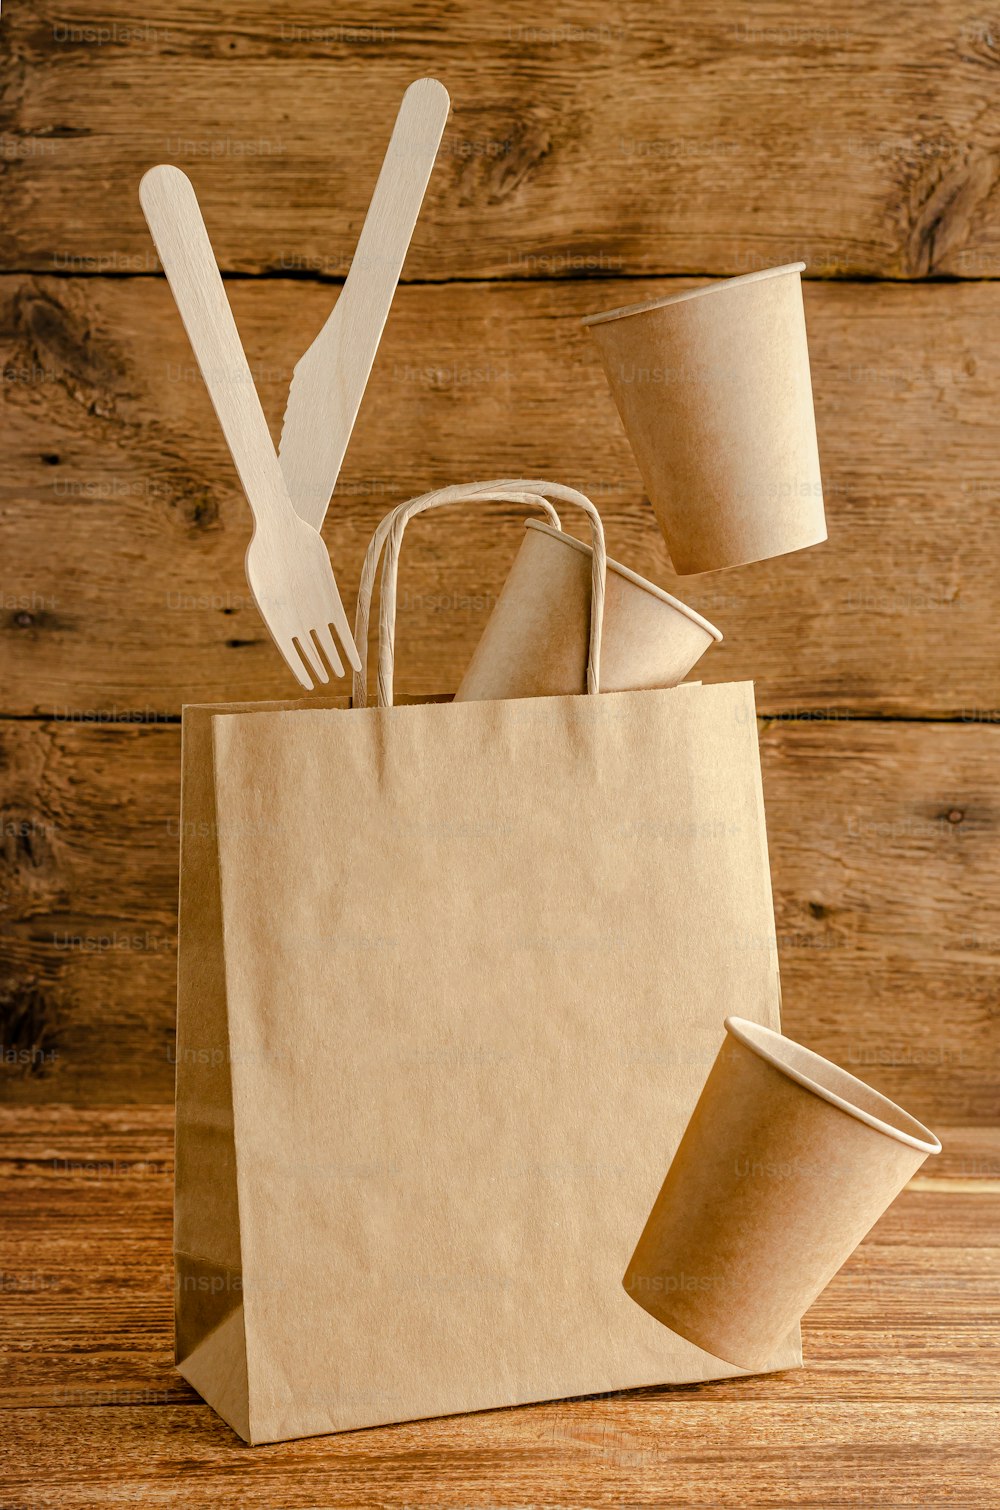 Vajilla de papel desechable voladora sobre bolsa con maqueta sobre fondo de madera. Concepto de cuidado del medio ambiente.